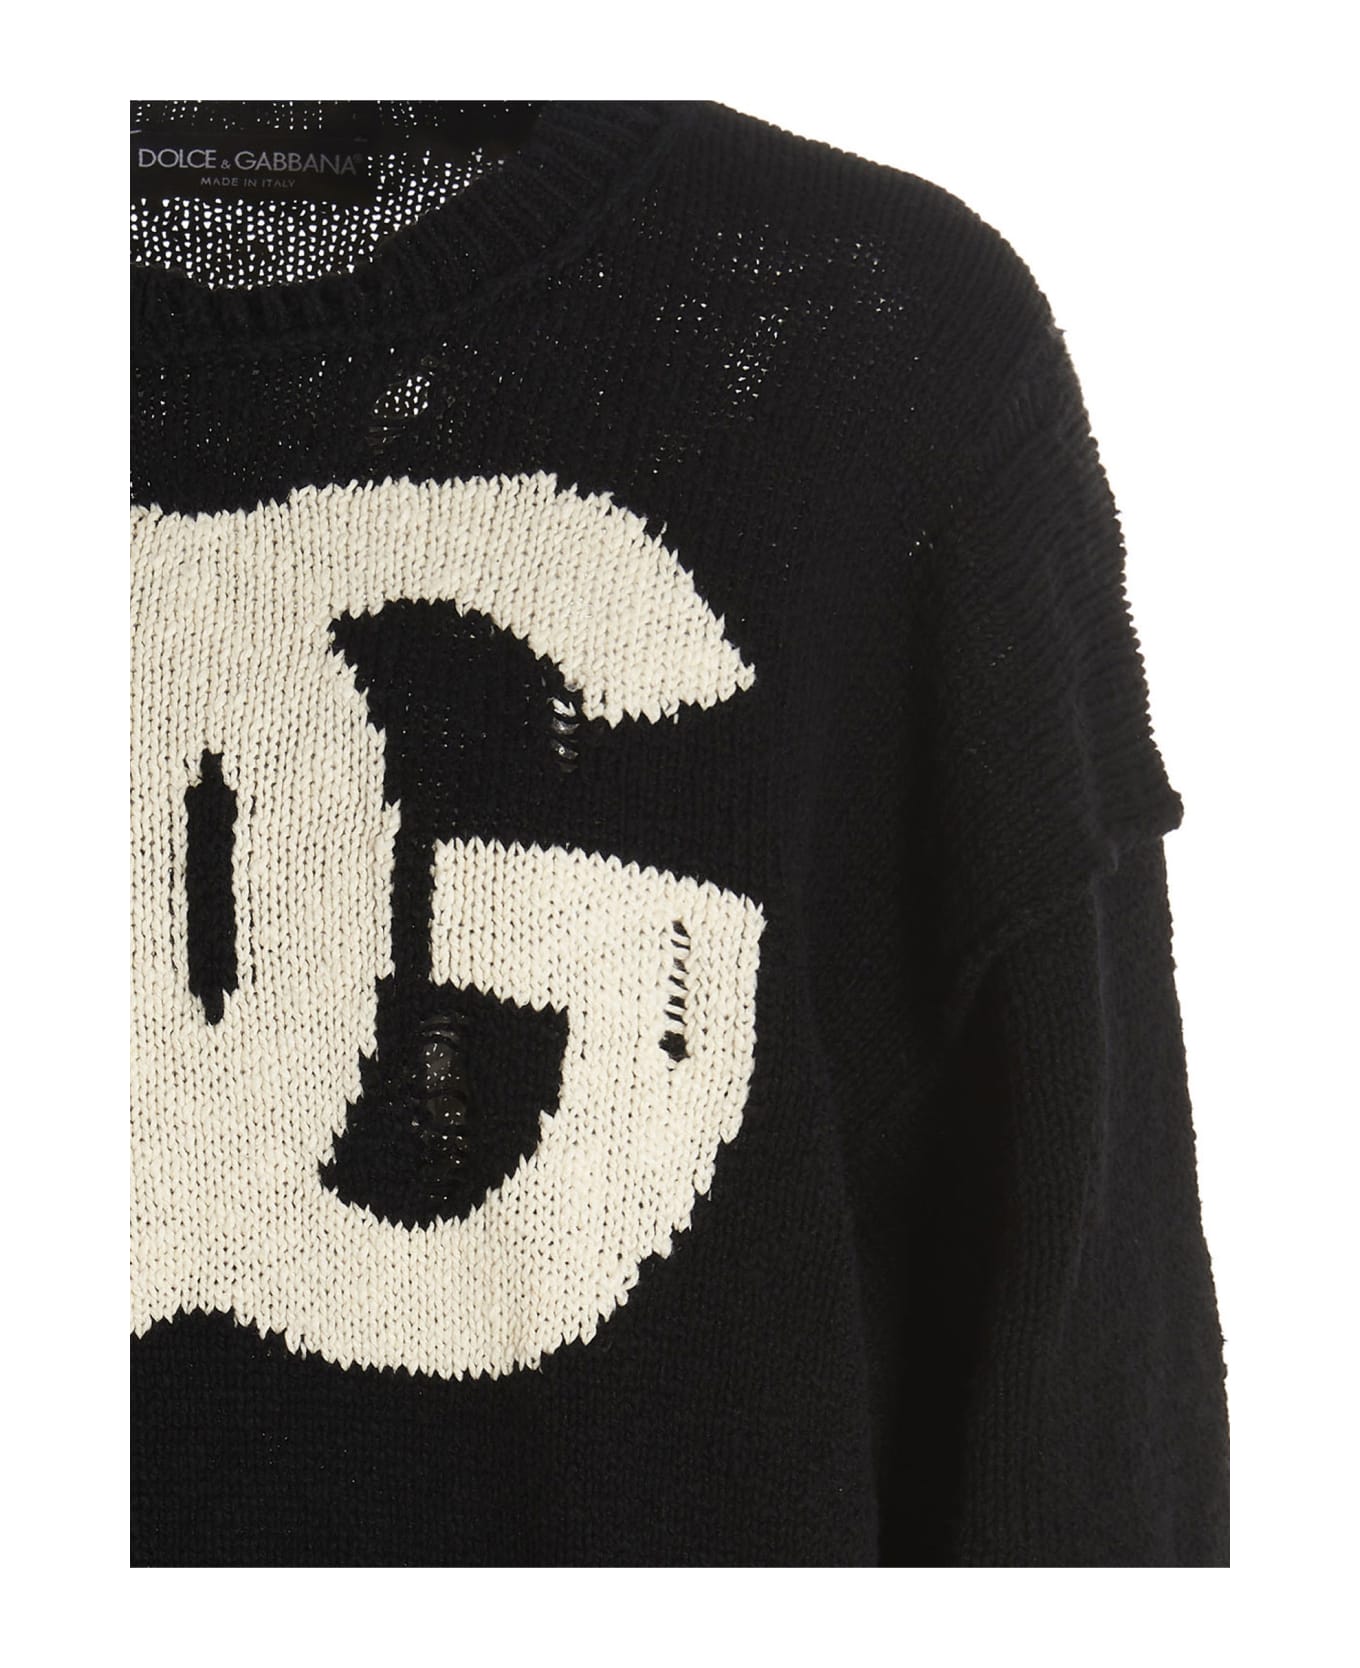 Dolce & Gabbana Cotton Blend Oversize Sweater - White/Black ニットウェア